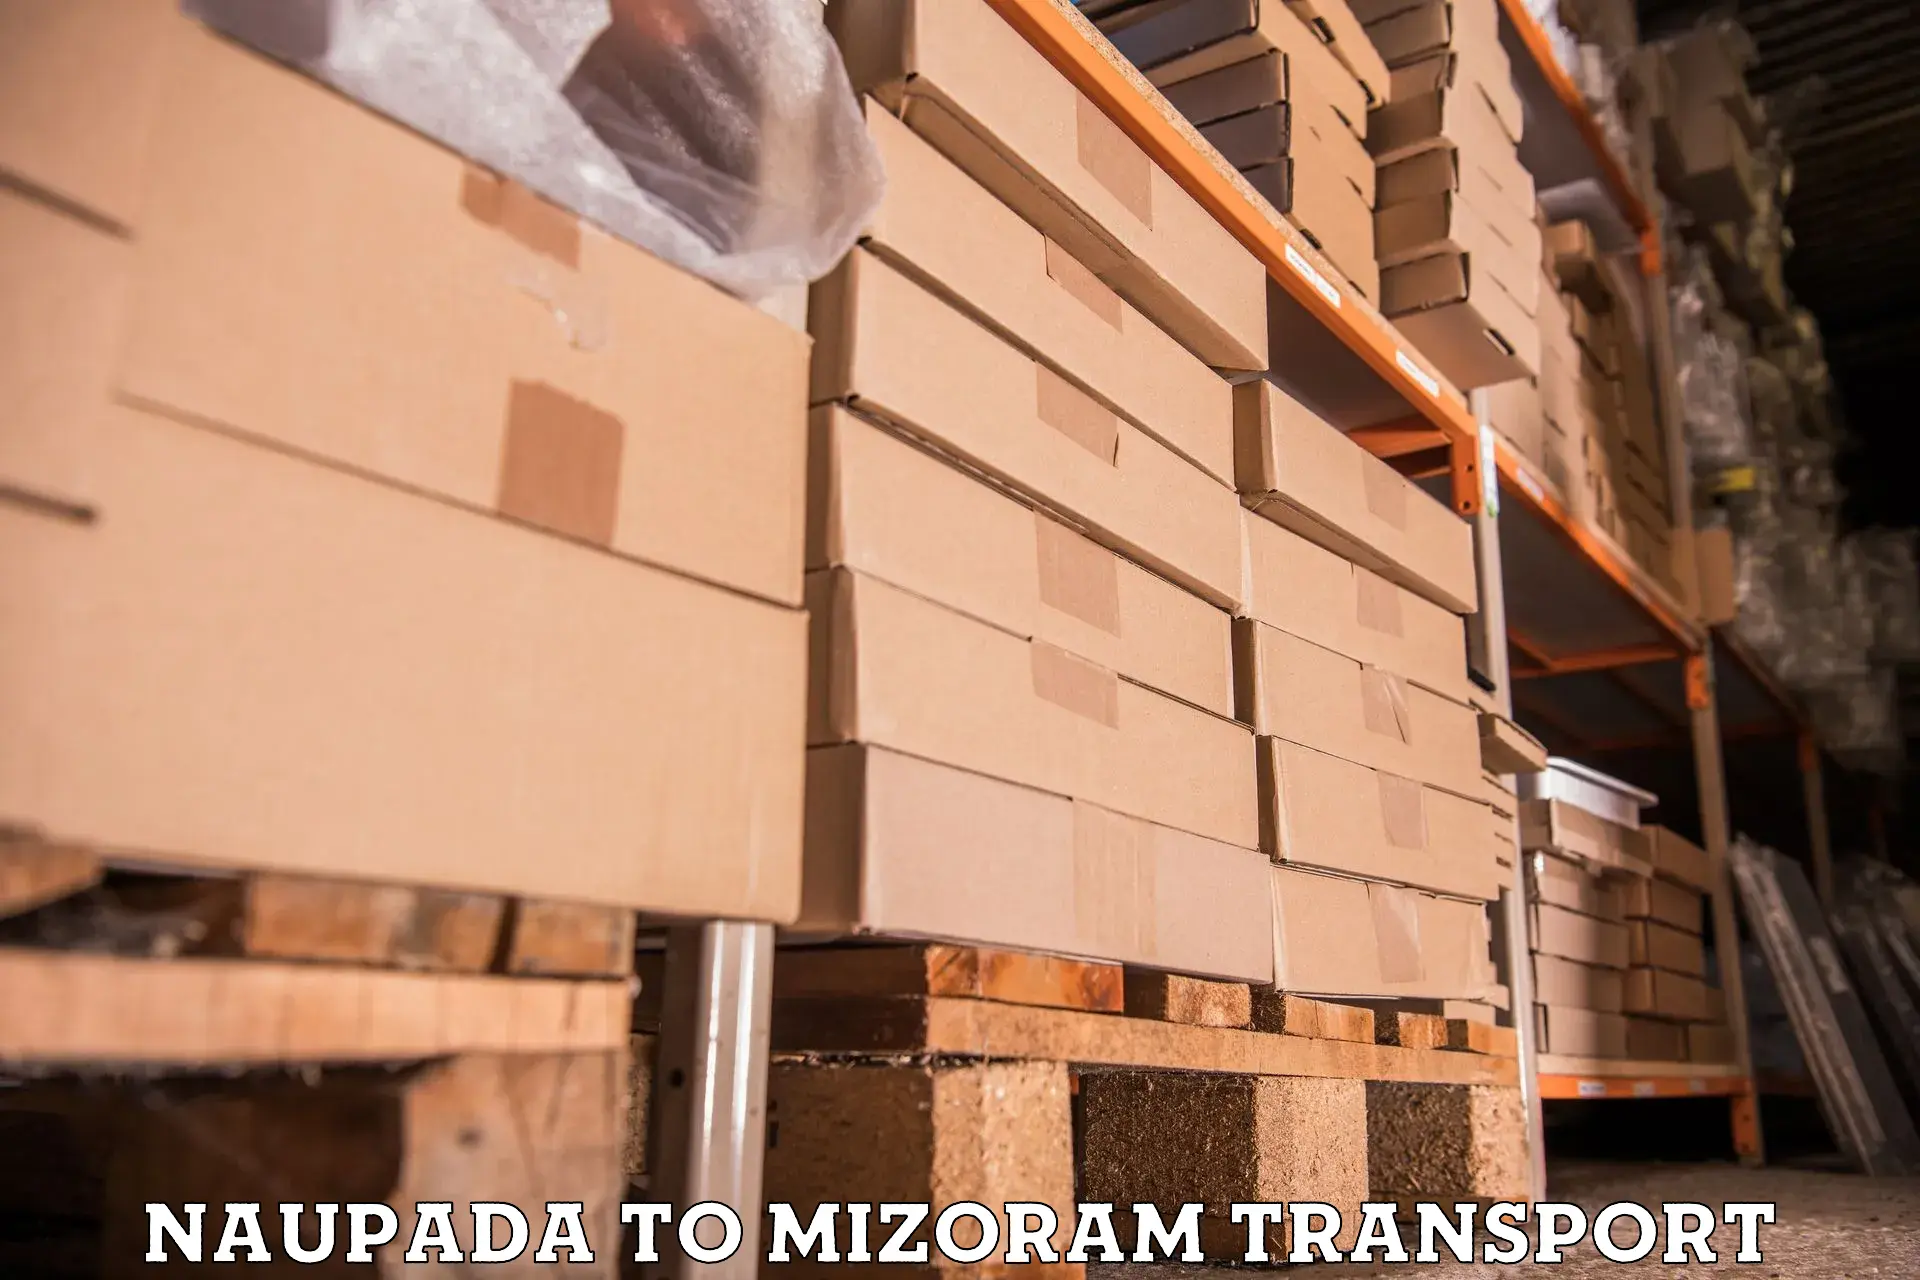 Air freight transport services Naupada to Mizoram